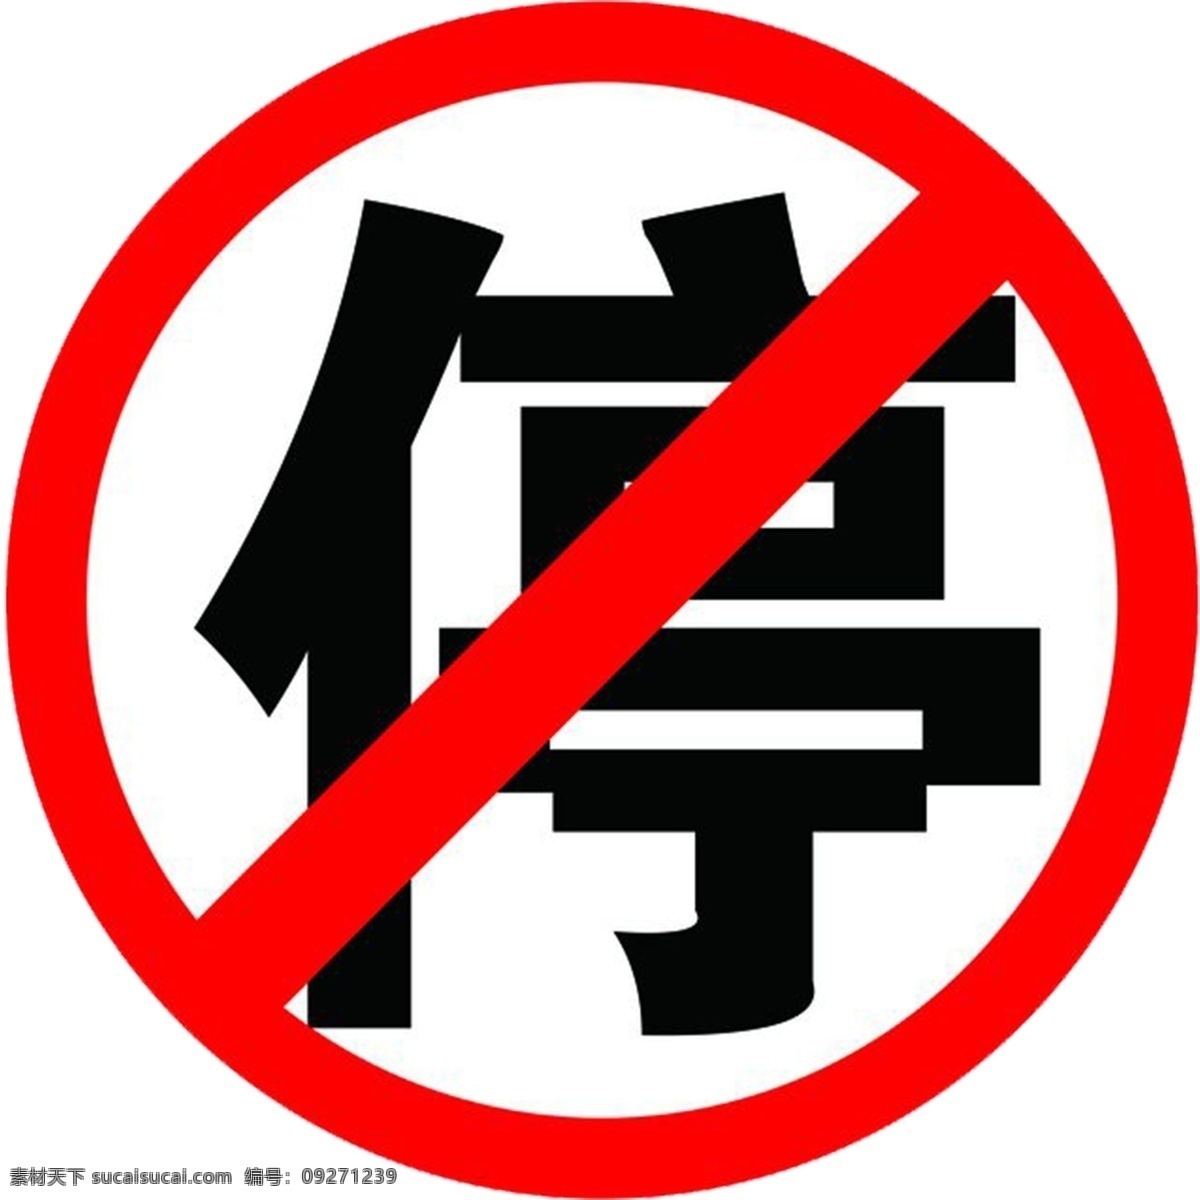 禁止停车牌子 禁止停车标识 禁止停车标志 禁止停车标牌 禁止标识 标志图标 公共标识标志 标识标牌